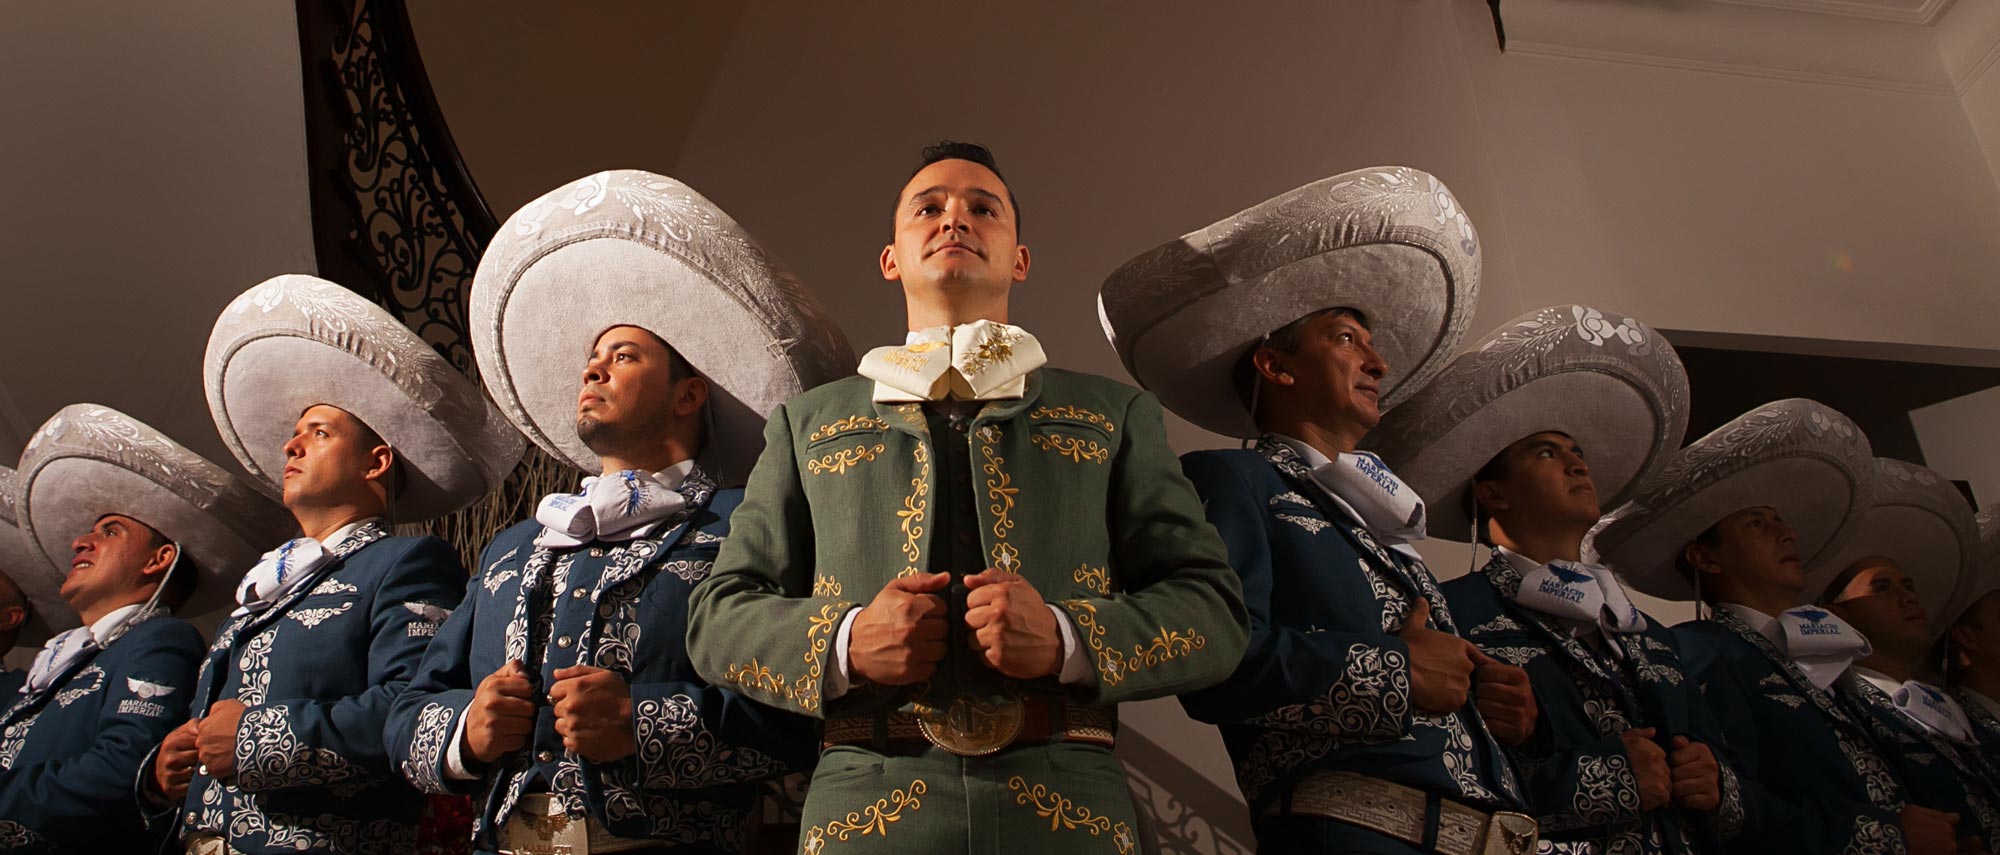 mariachi imperial cali, suscripción a noticias y eventos - www.mariachimperial.com